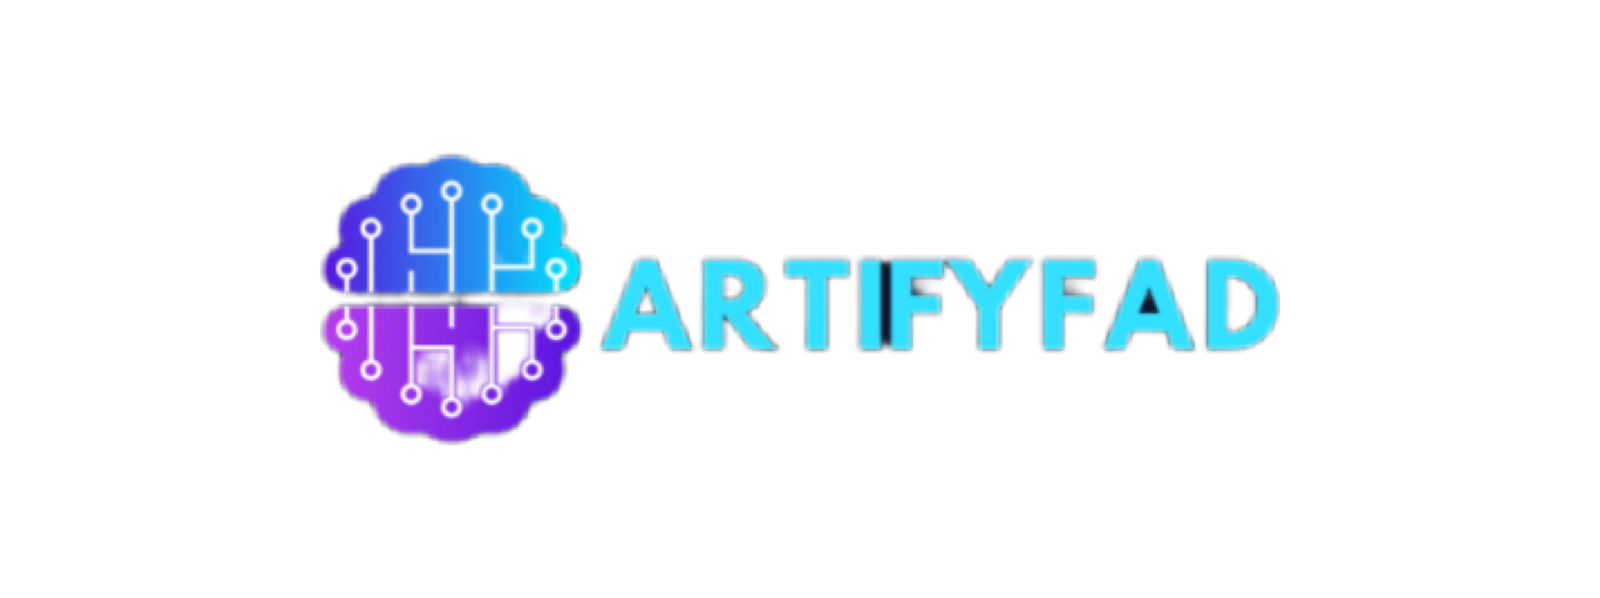 Artifyfad logo